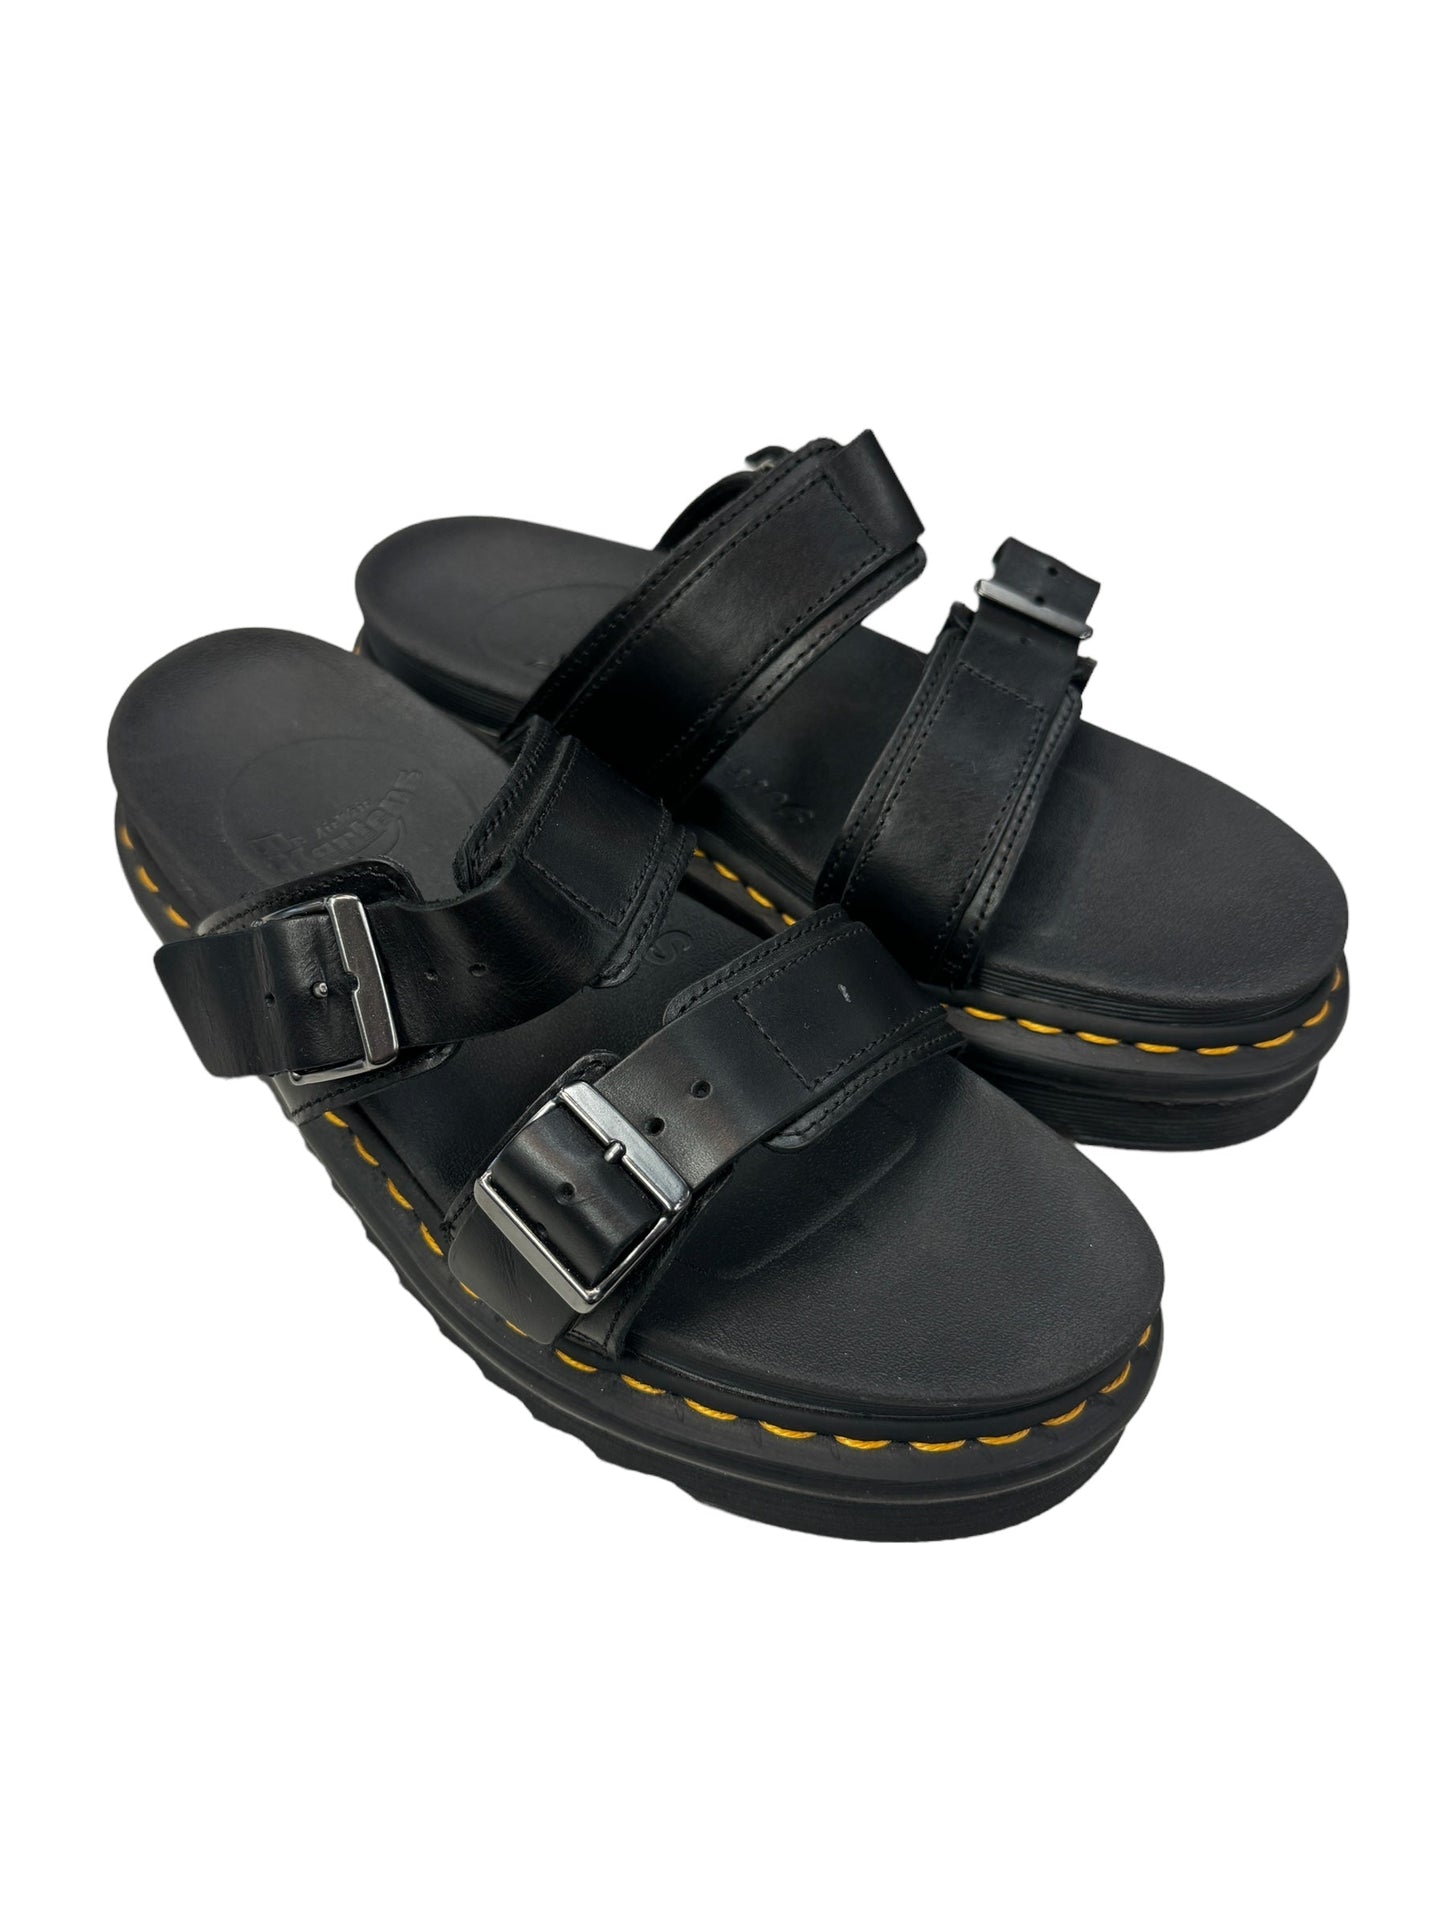 Black Sandals Designer Dr Martens, Size 8